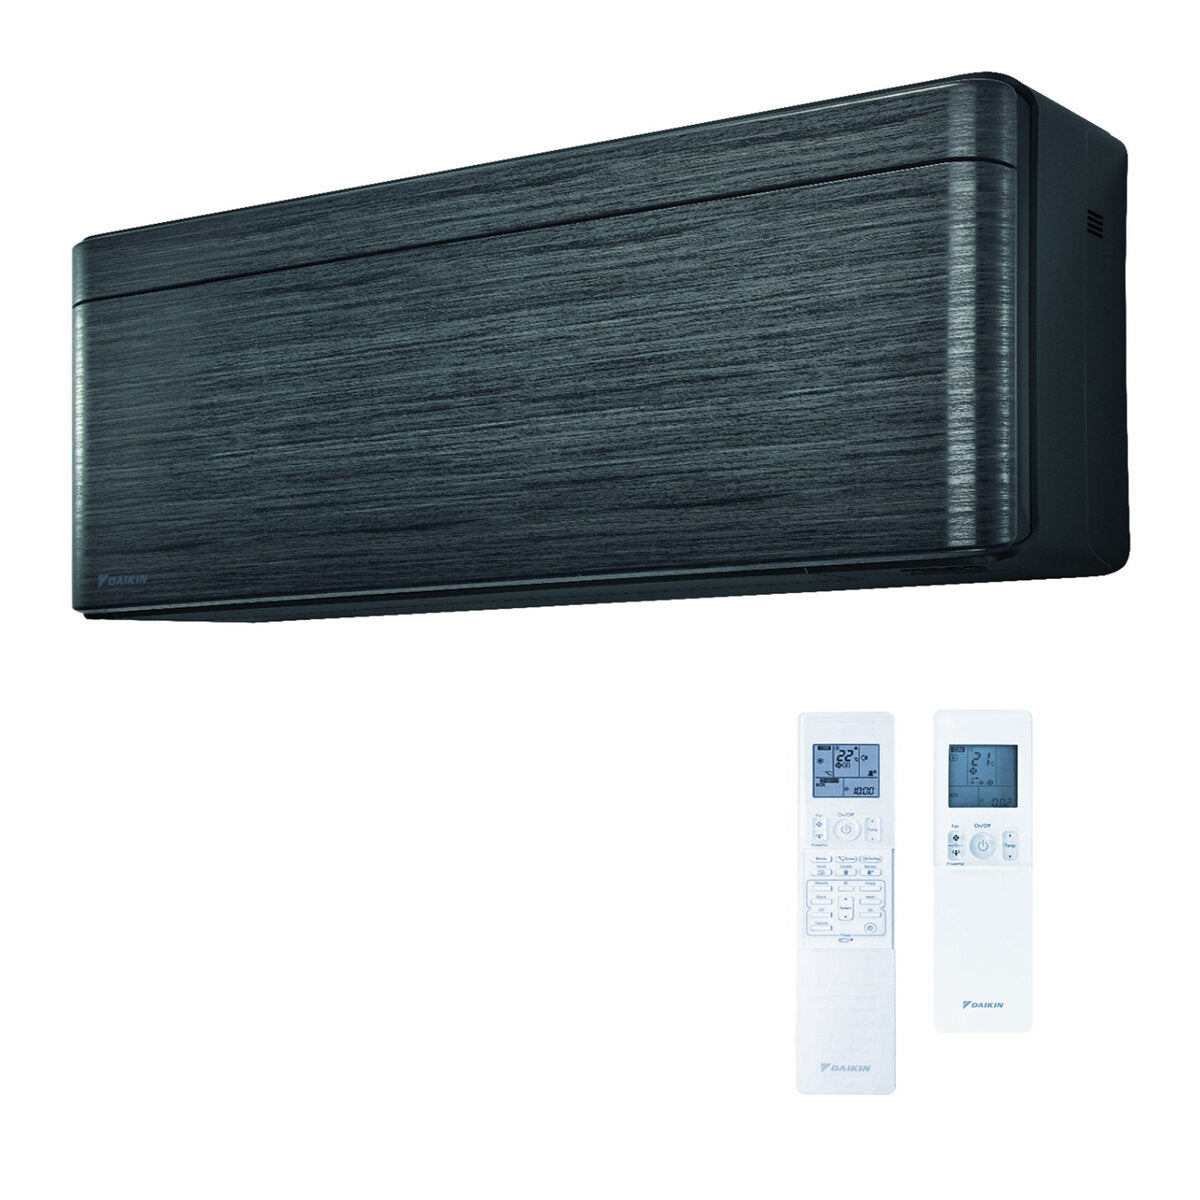 Daikin Stylish air conditioner penta split 7000 + 9000 + 9000 + 12000 + 18000 BTU inverter A ++ wifi outdoor unit 9.0 kW